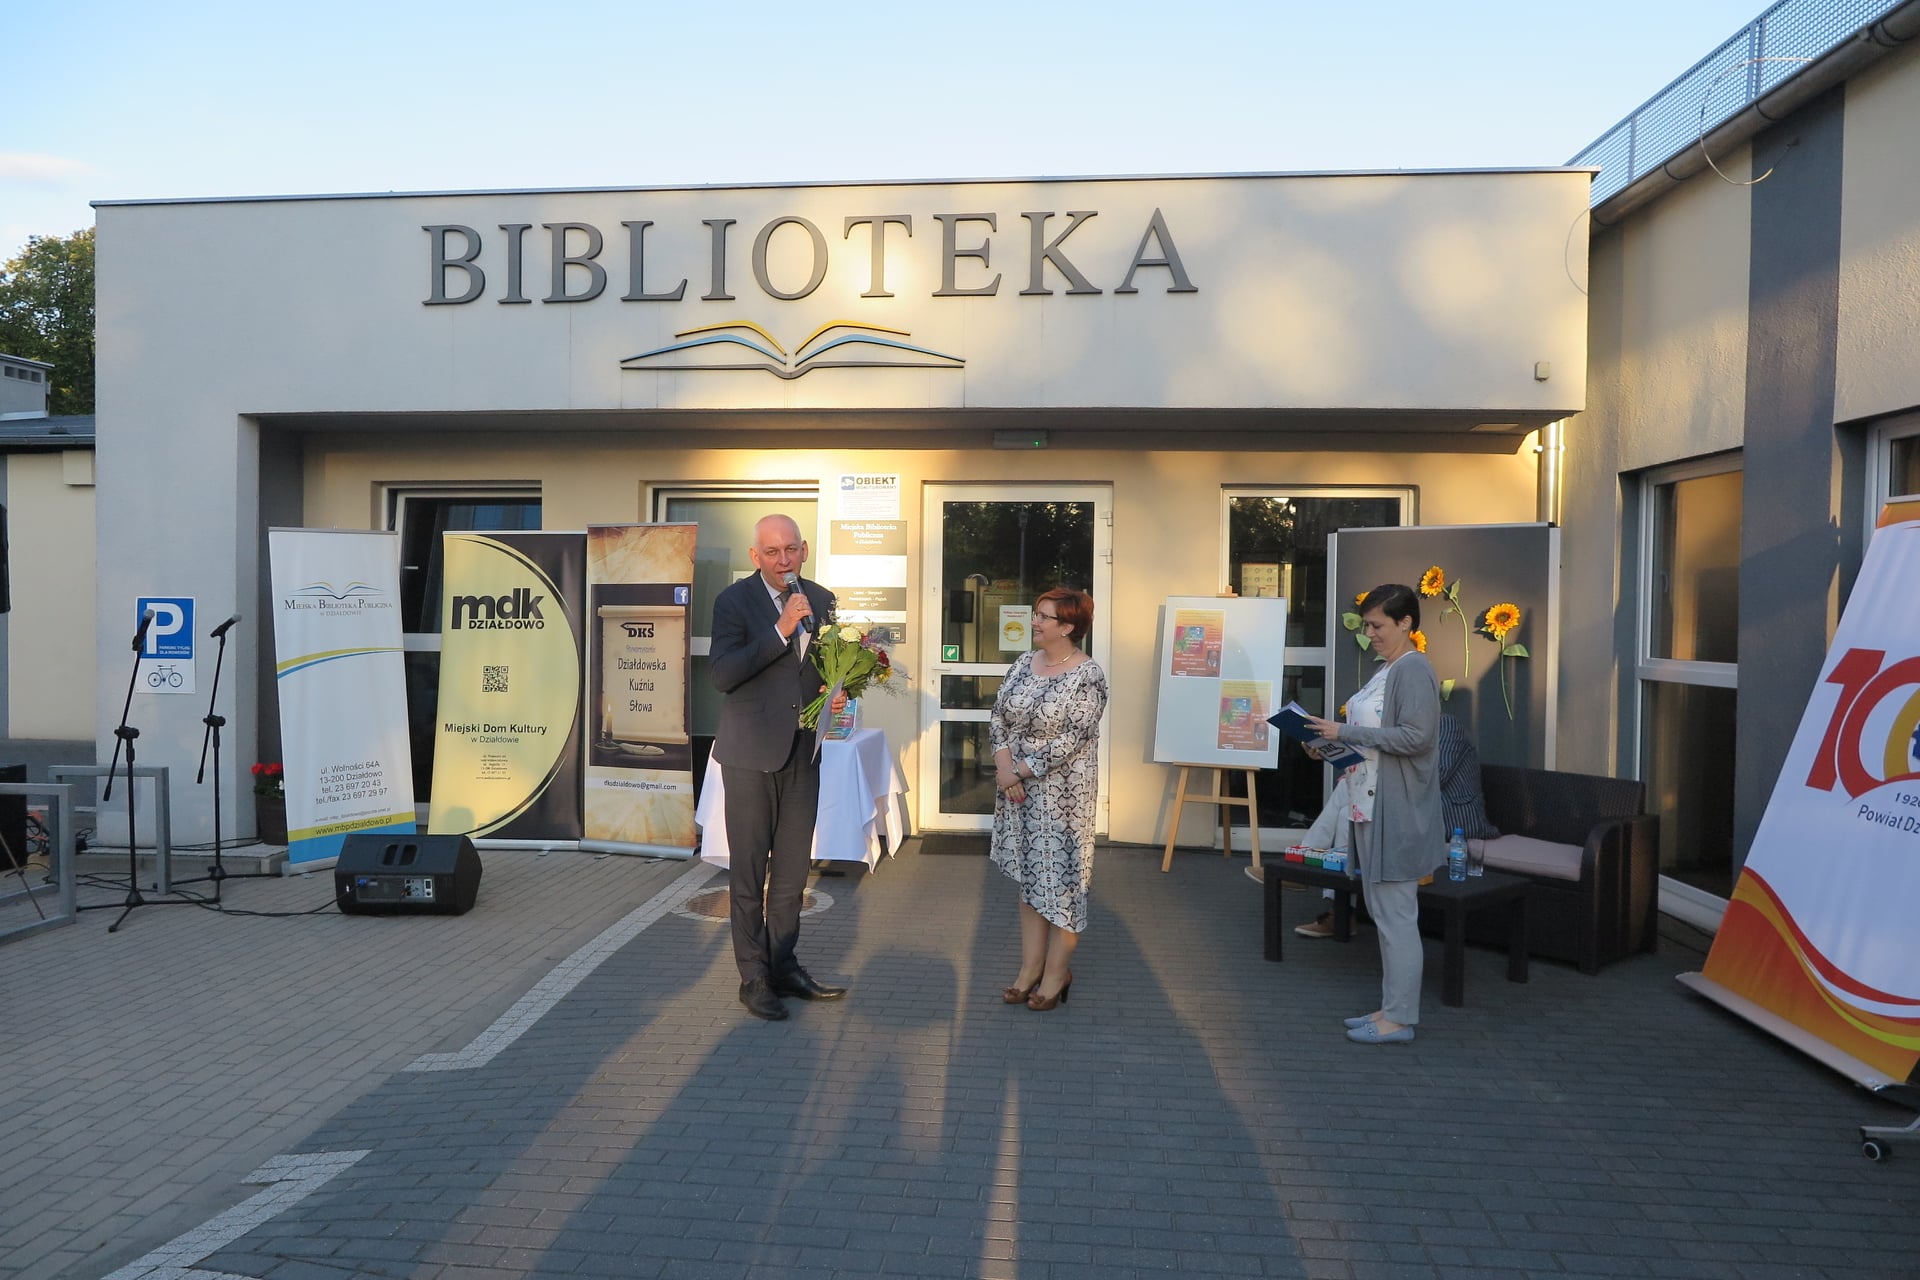 Na placu przed biblioteką z mikrofonem oraz bukietem kwiatów stoi burmistrz miasta Działdowo Grzegorz Mrowiński obok stoją dwie panie z DKS.